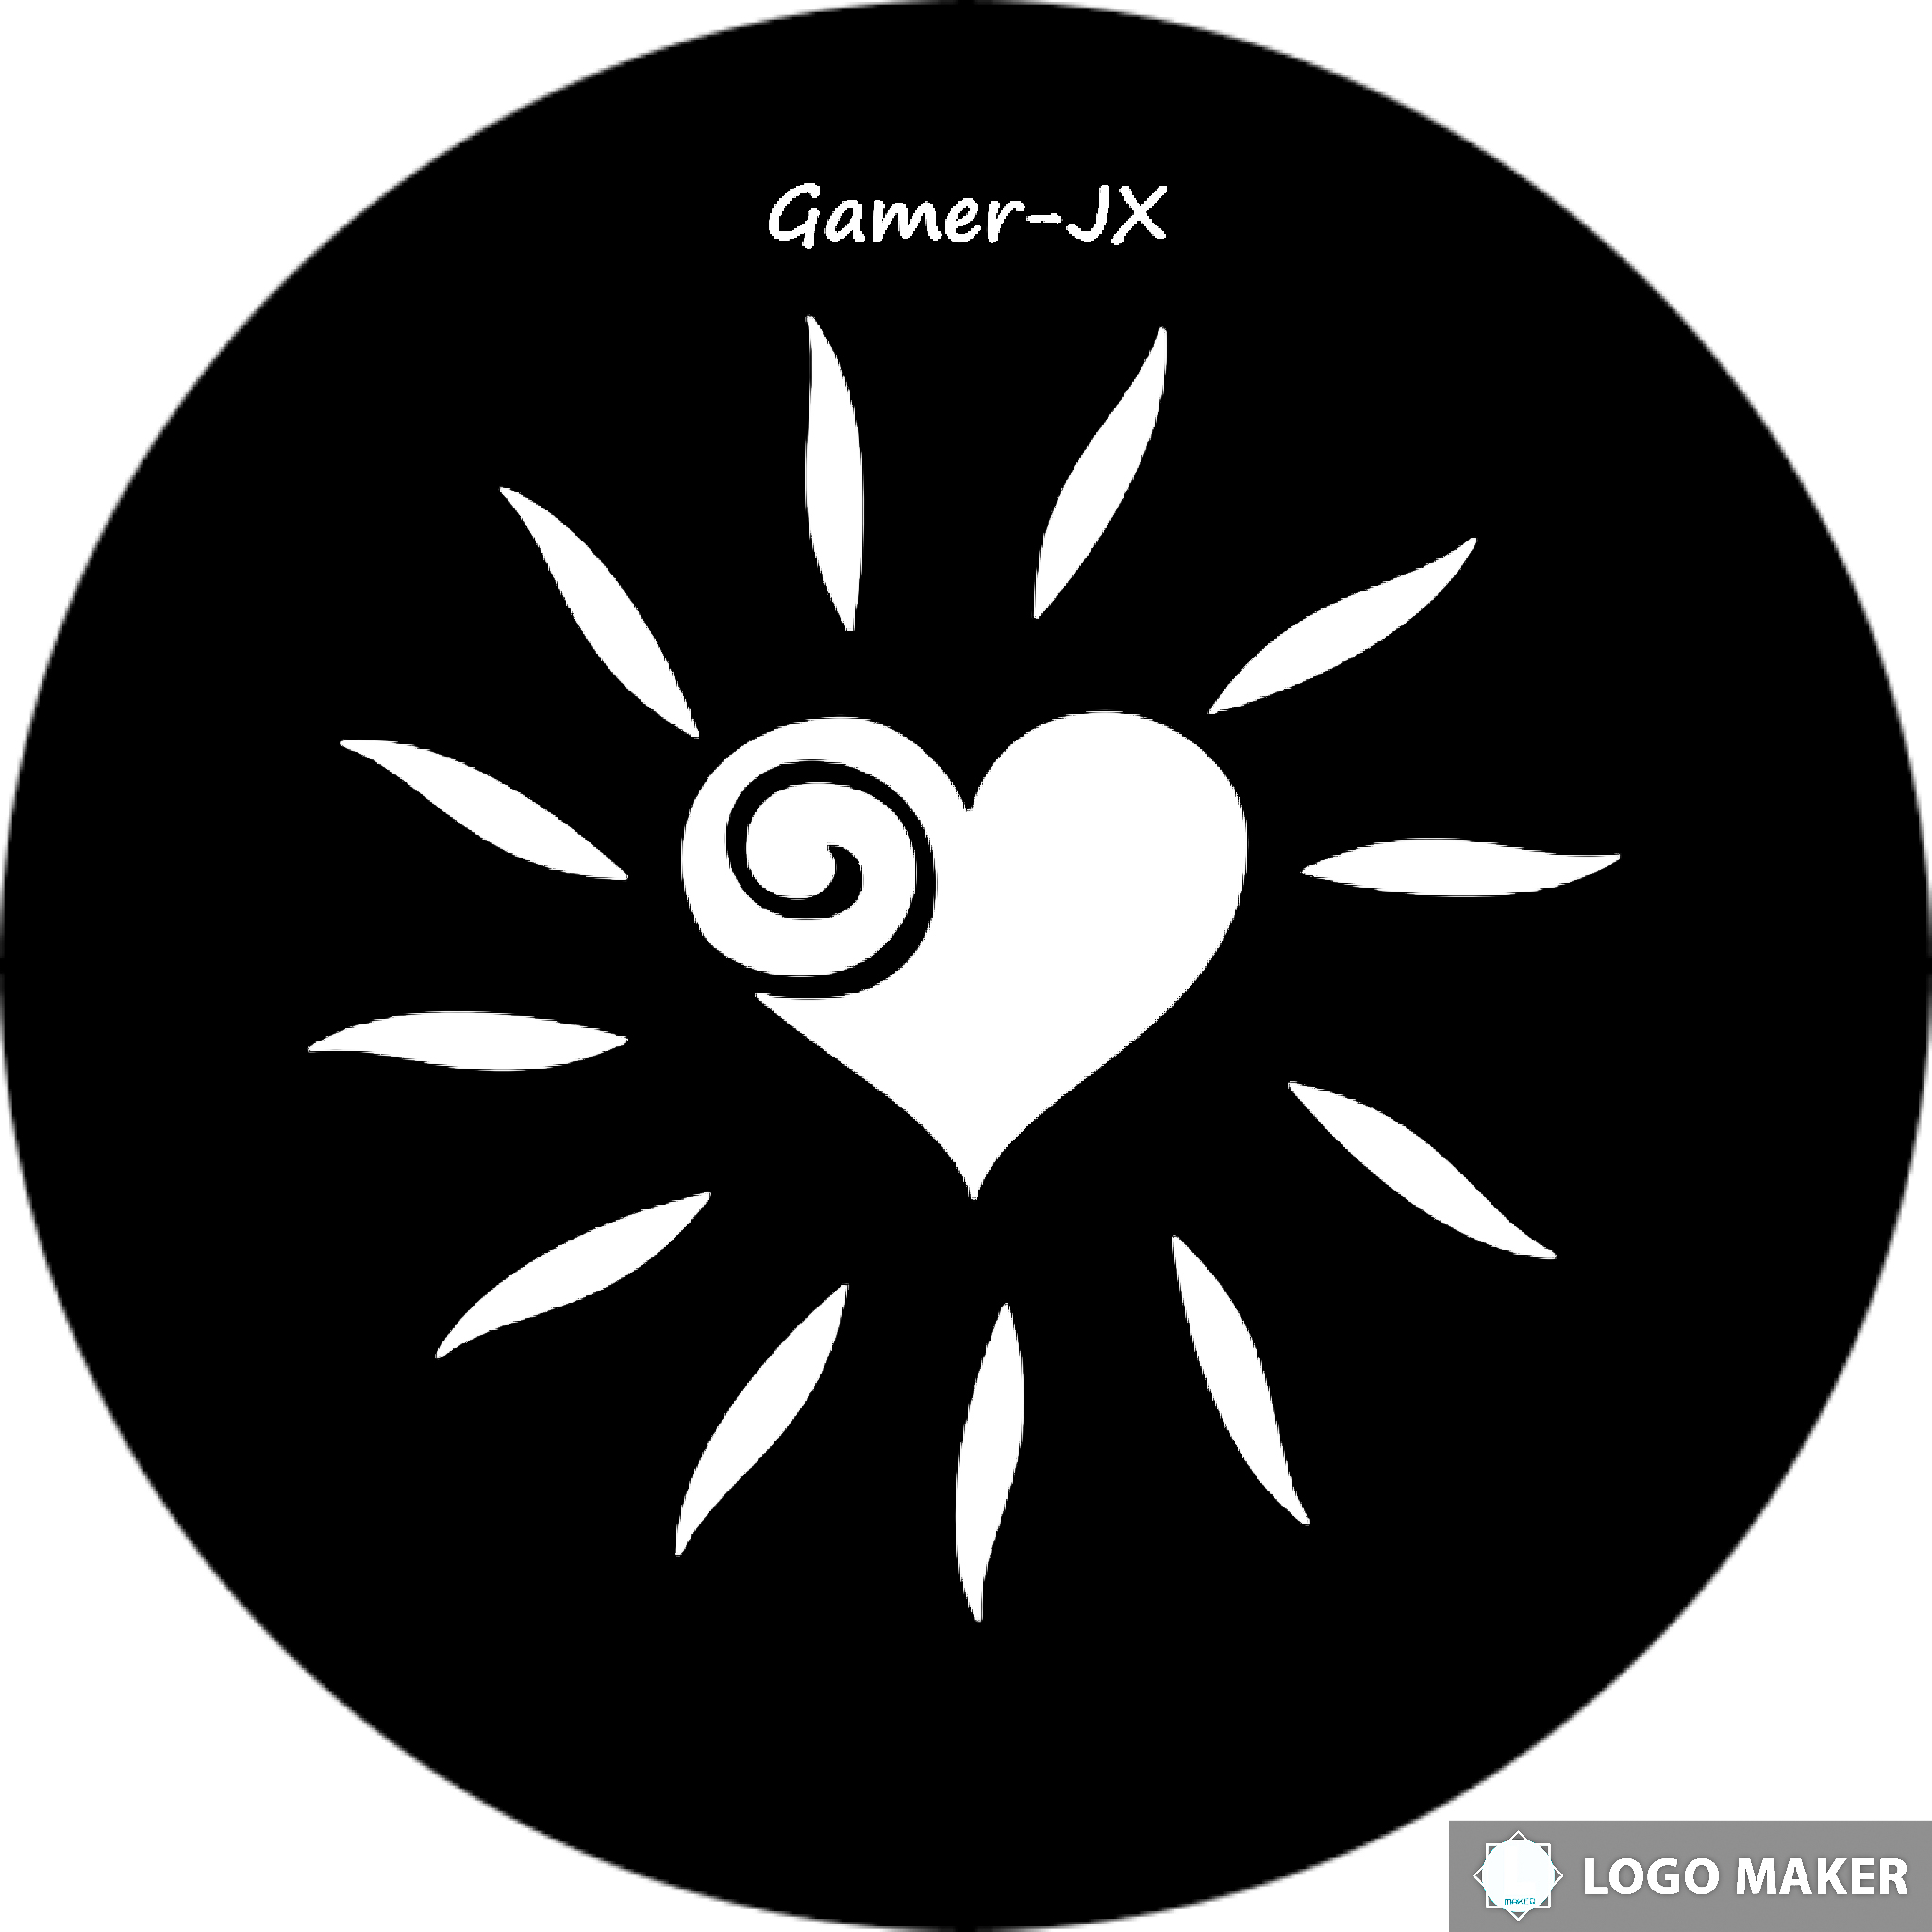 Gamer-JX